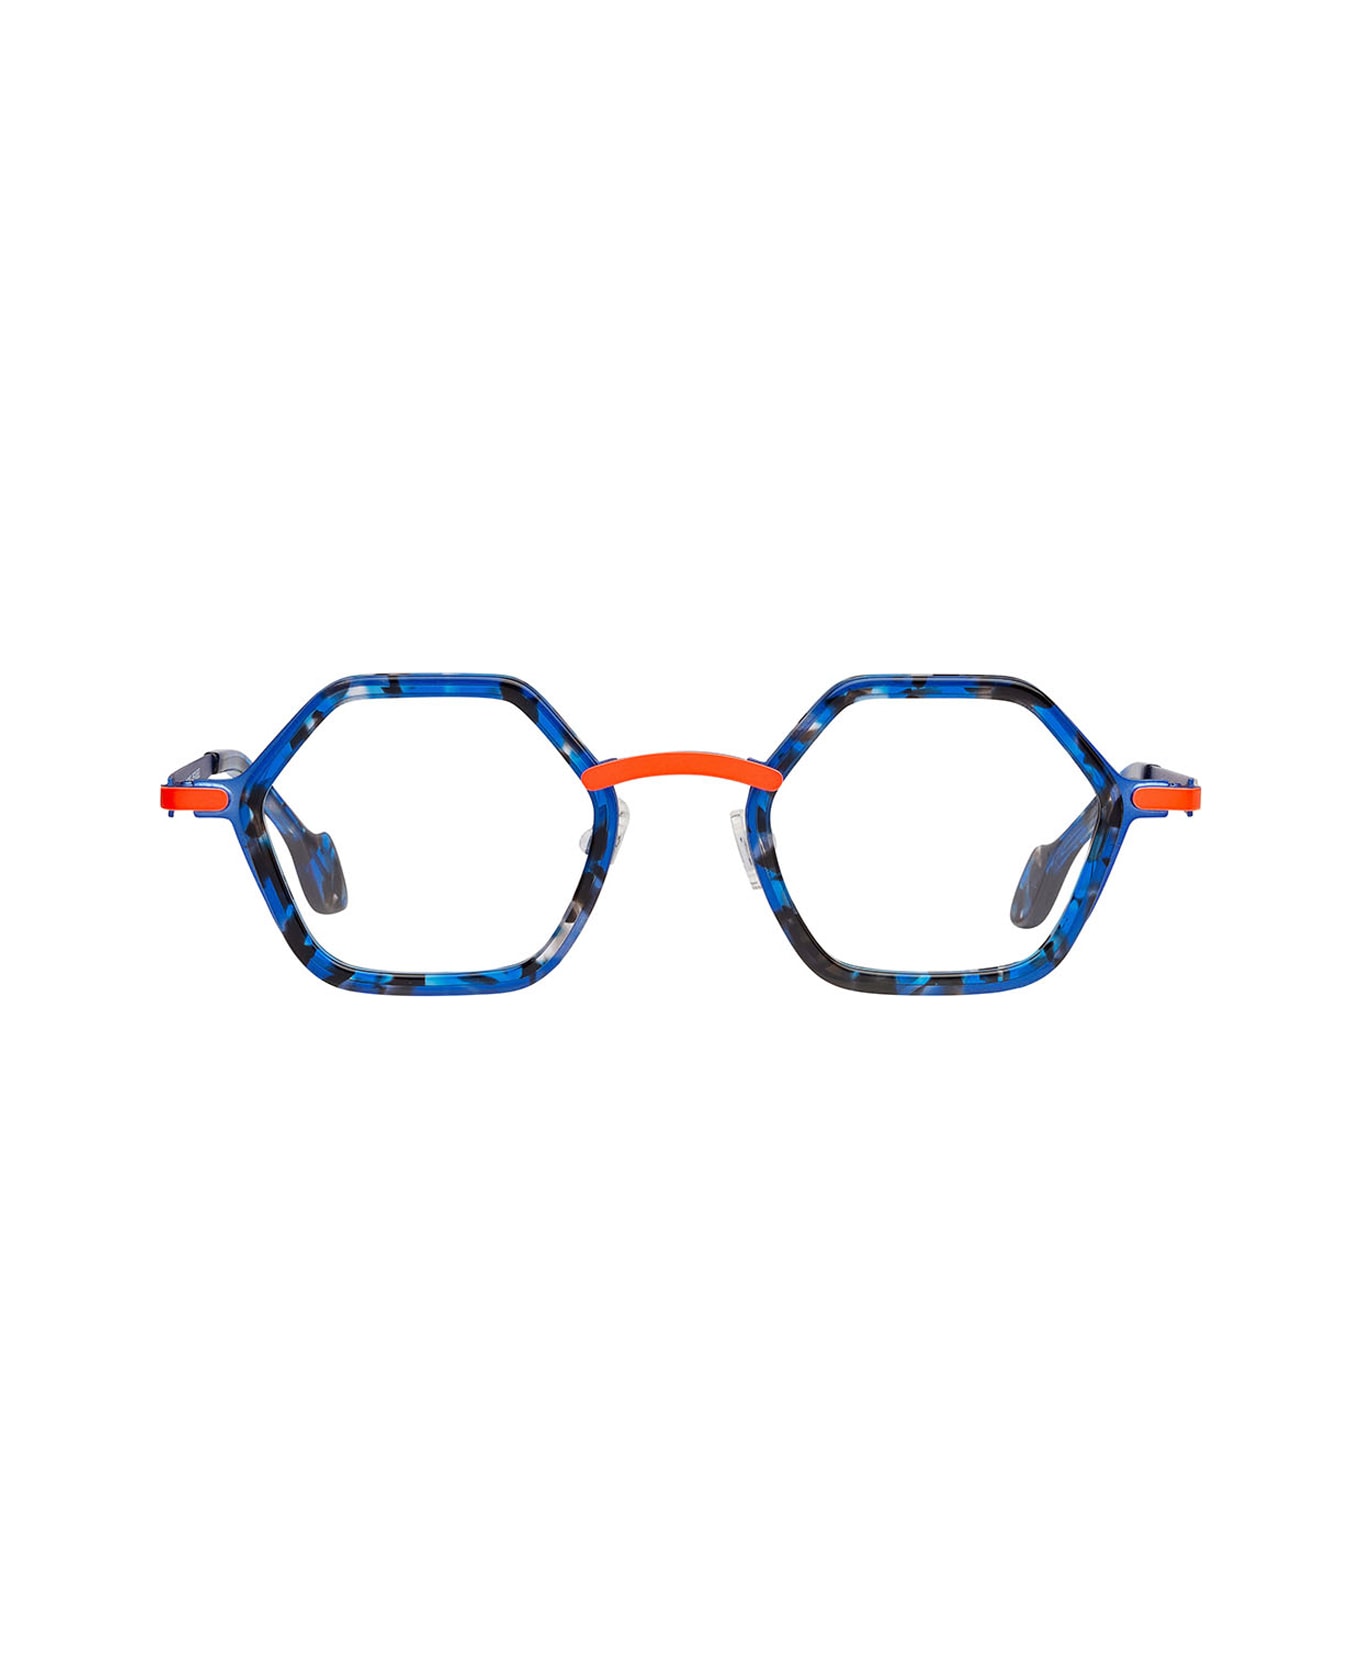 Matttew Gesa Glasses - Blu